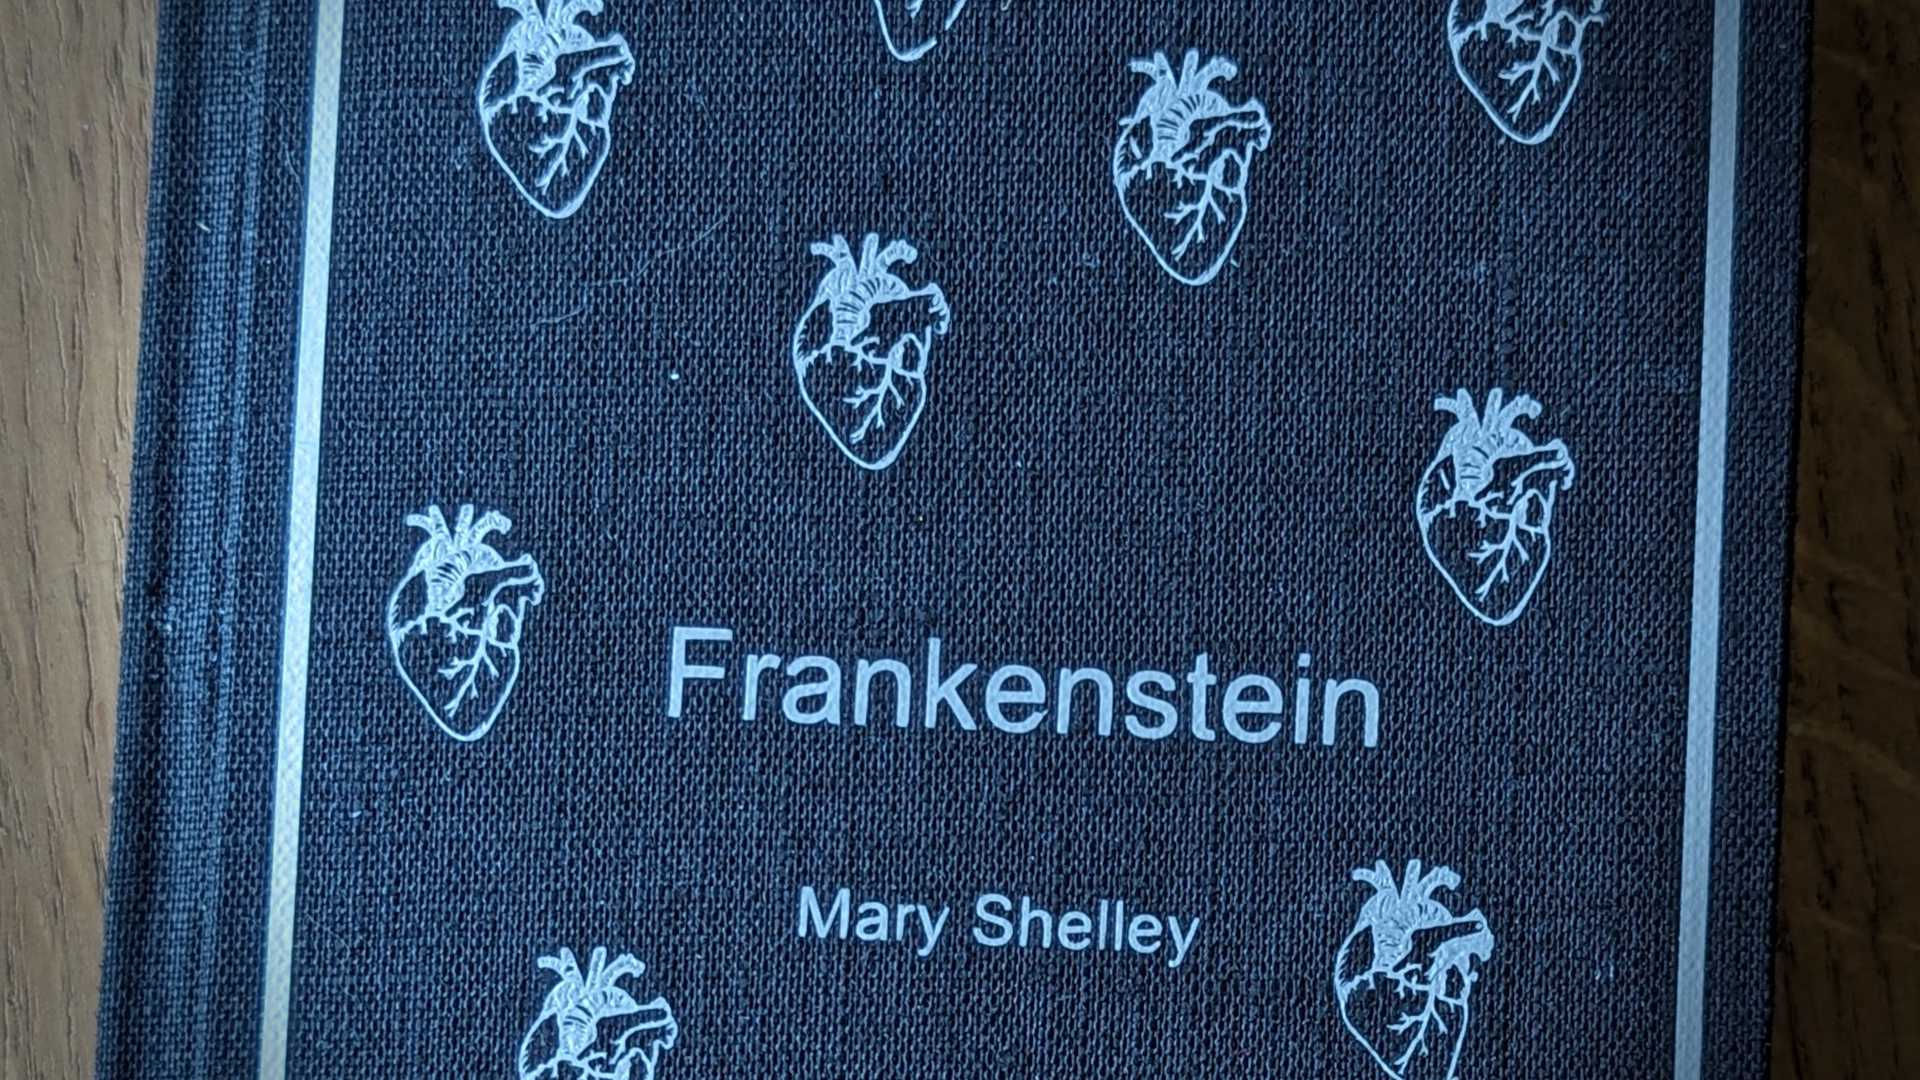 New Hardcover for Frankenstein